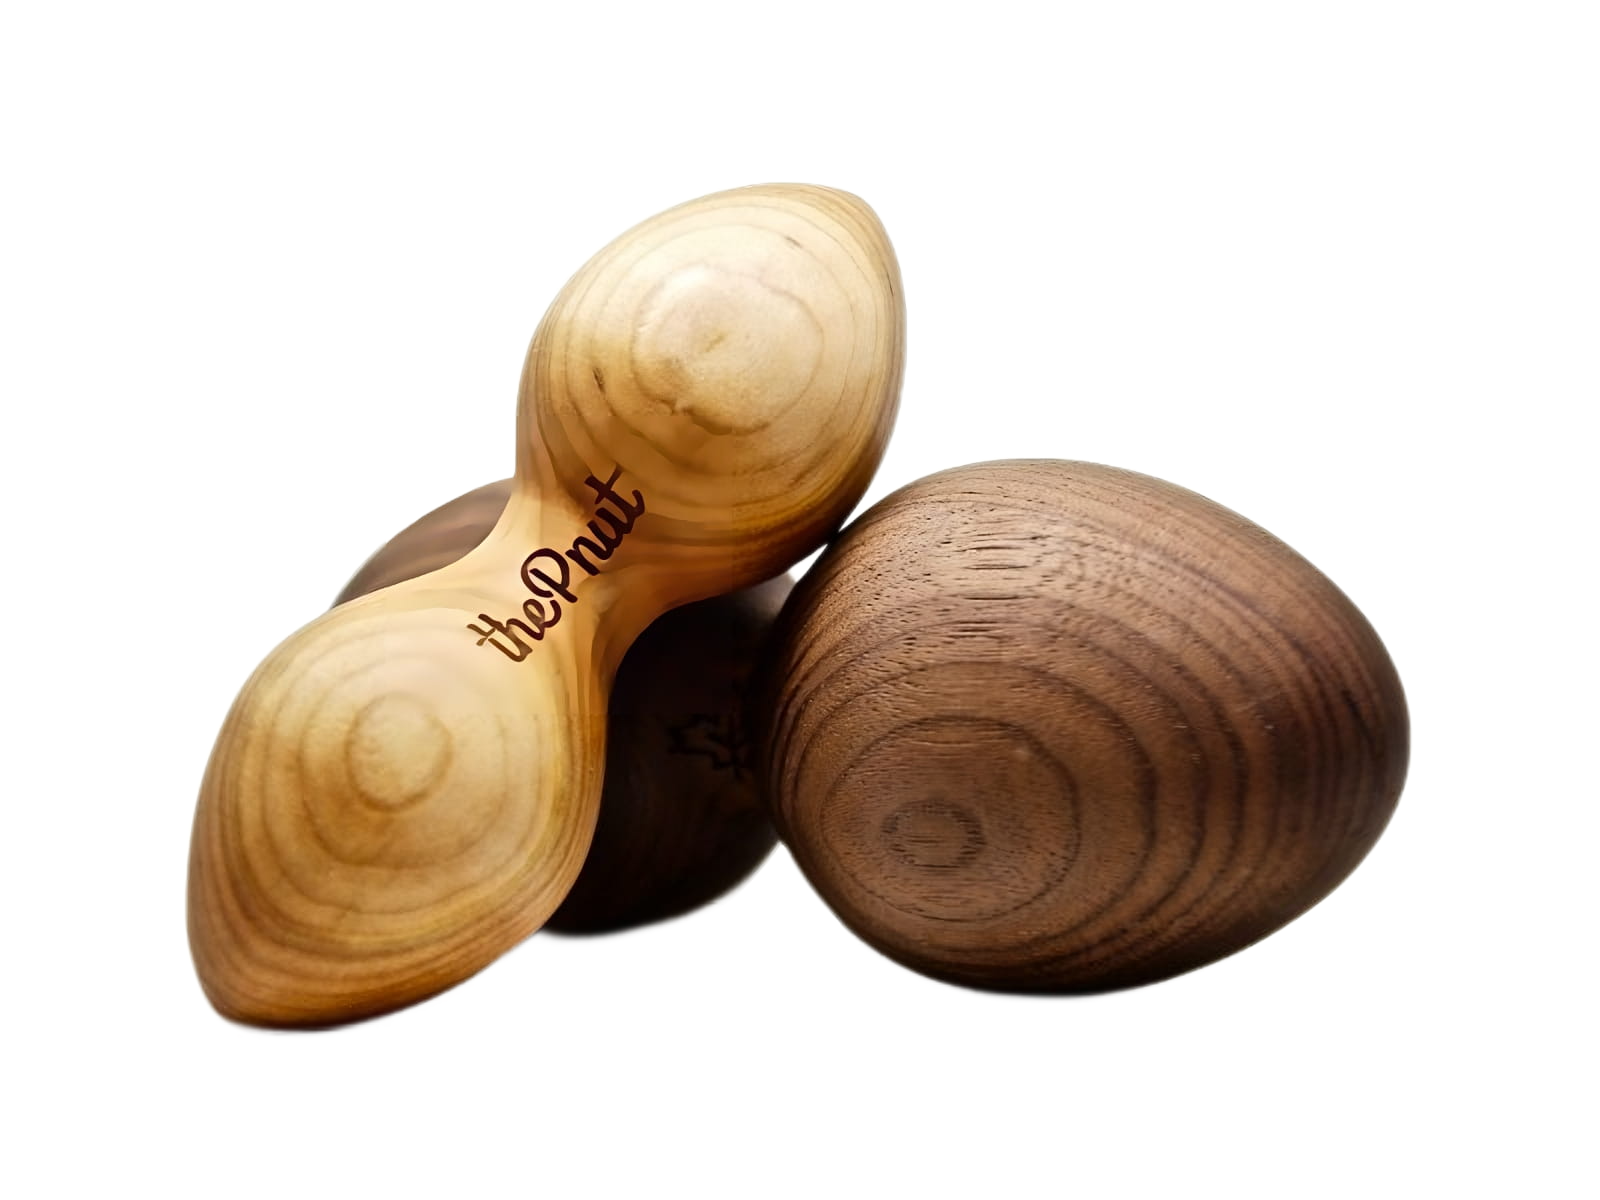 Pair of Nuts